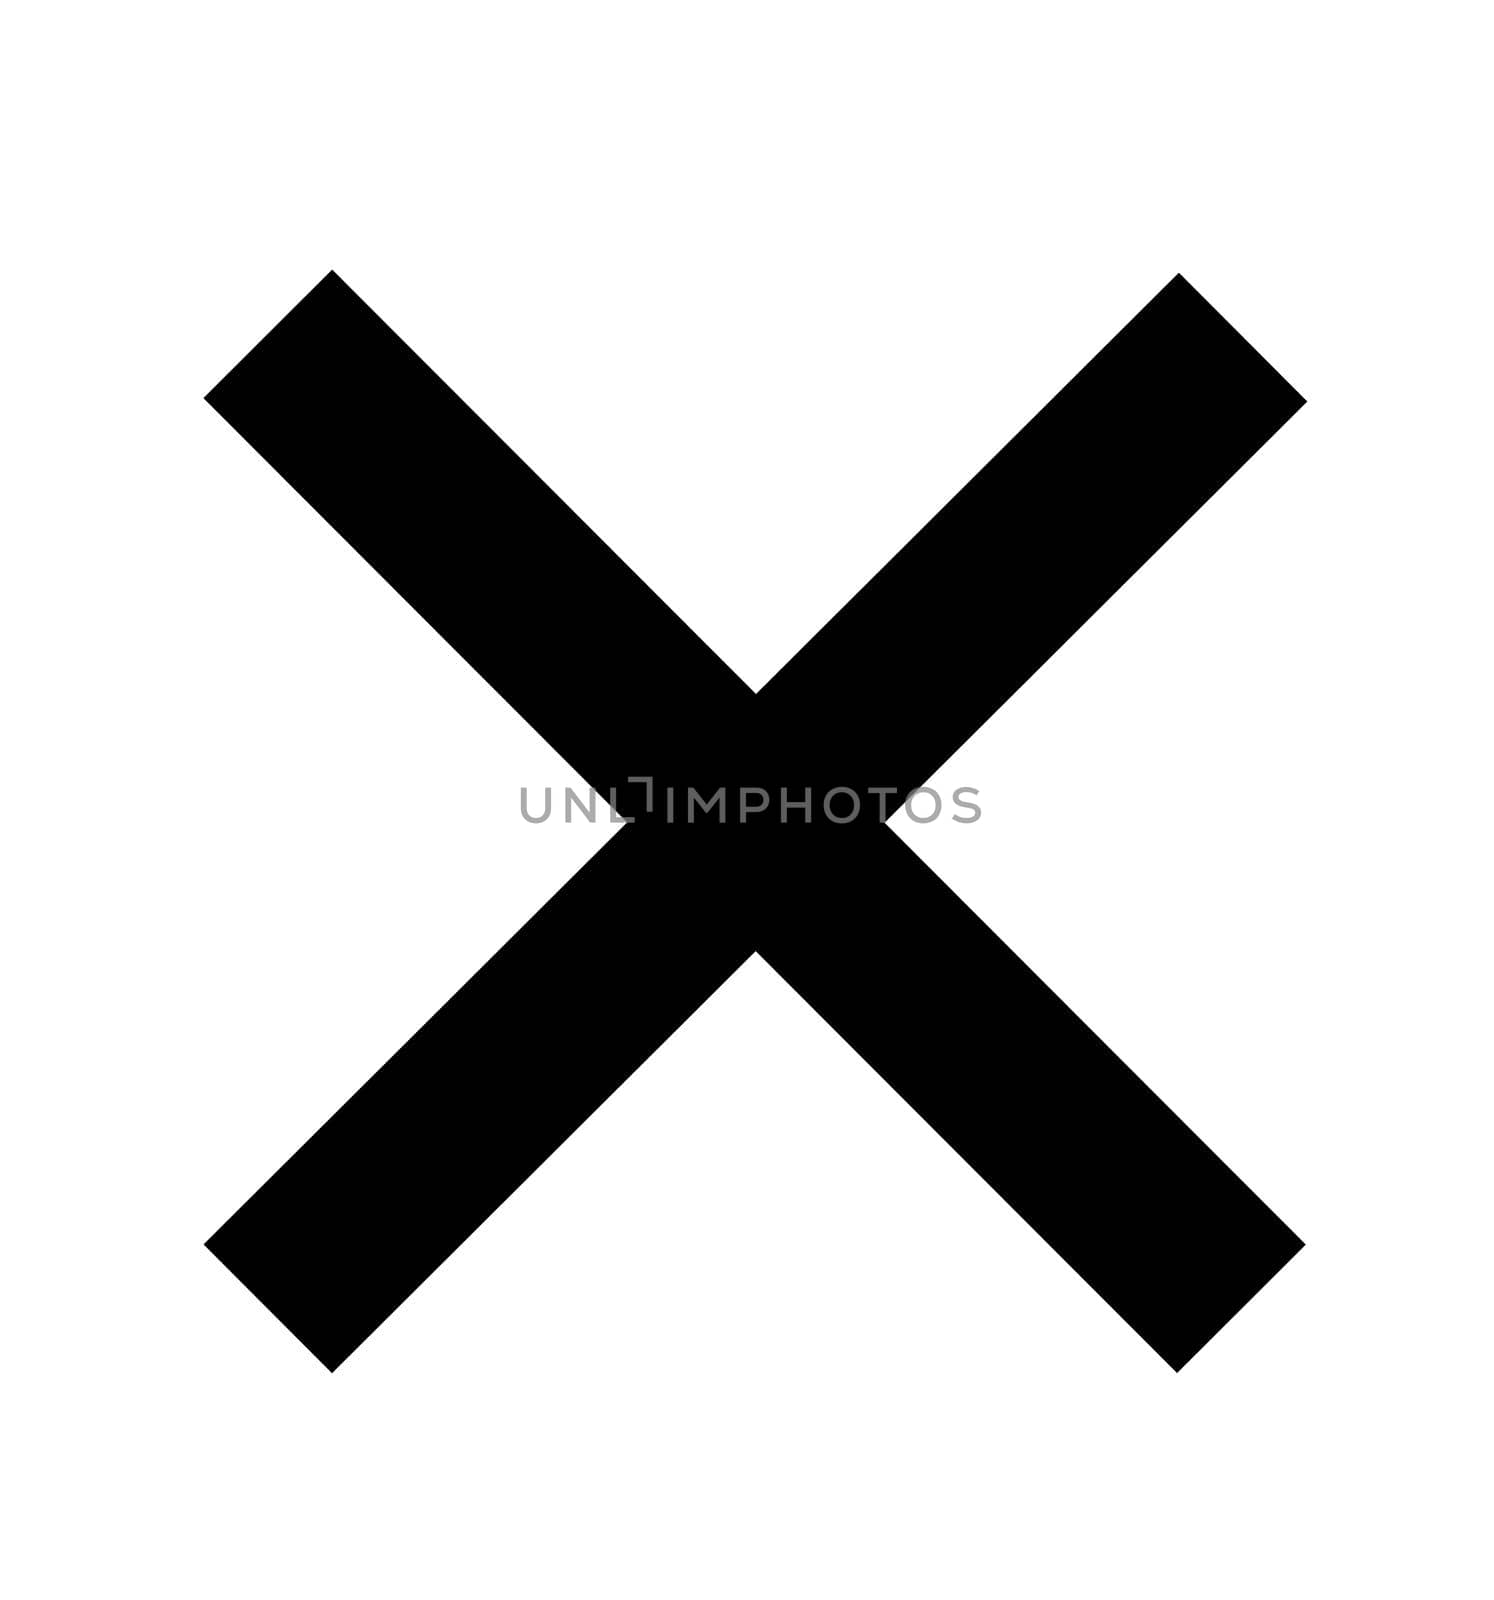 Cross icon no symbol illustration isolated on white eps 10